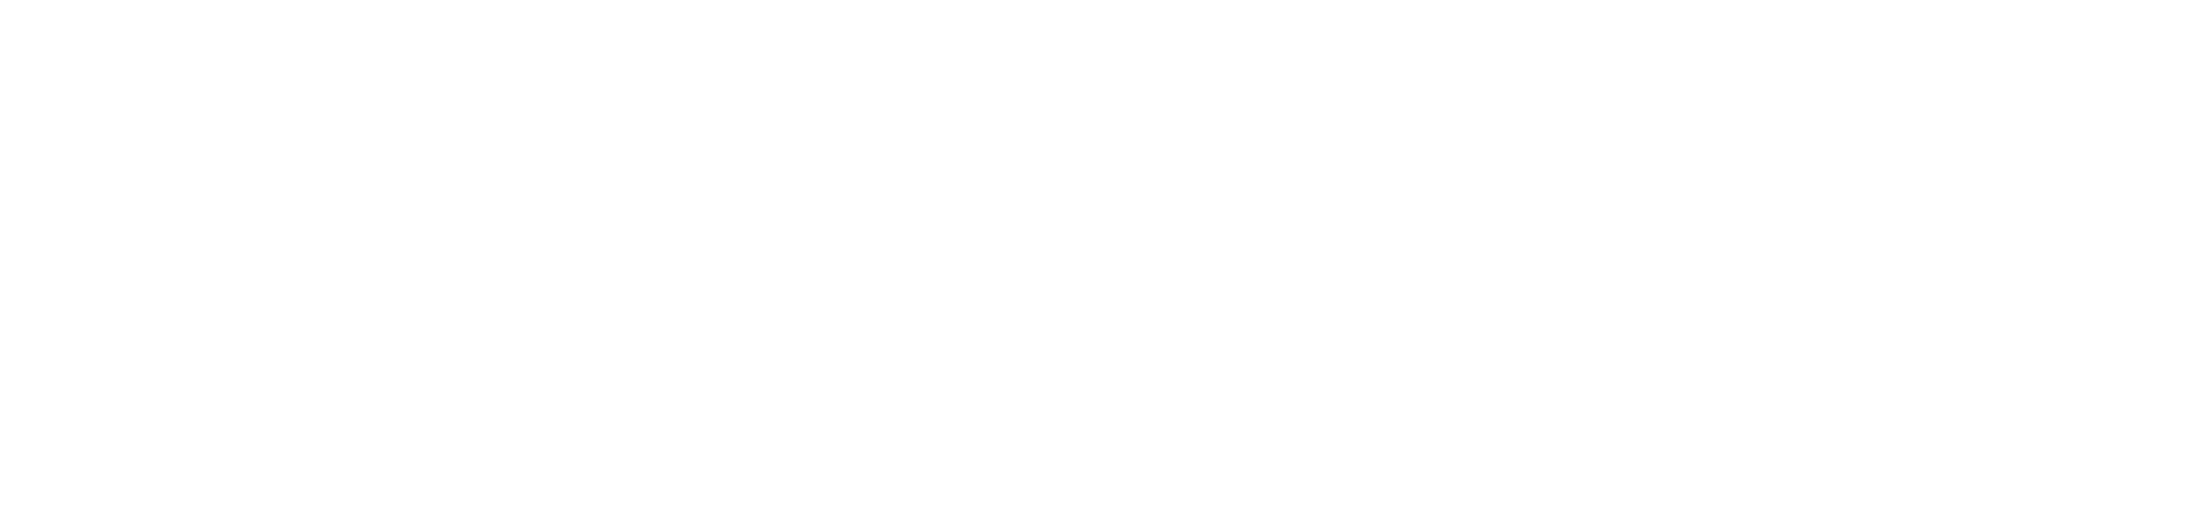 Black Forest Inn Bed & Breakfast Logo